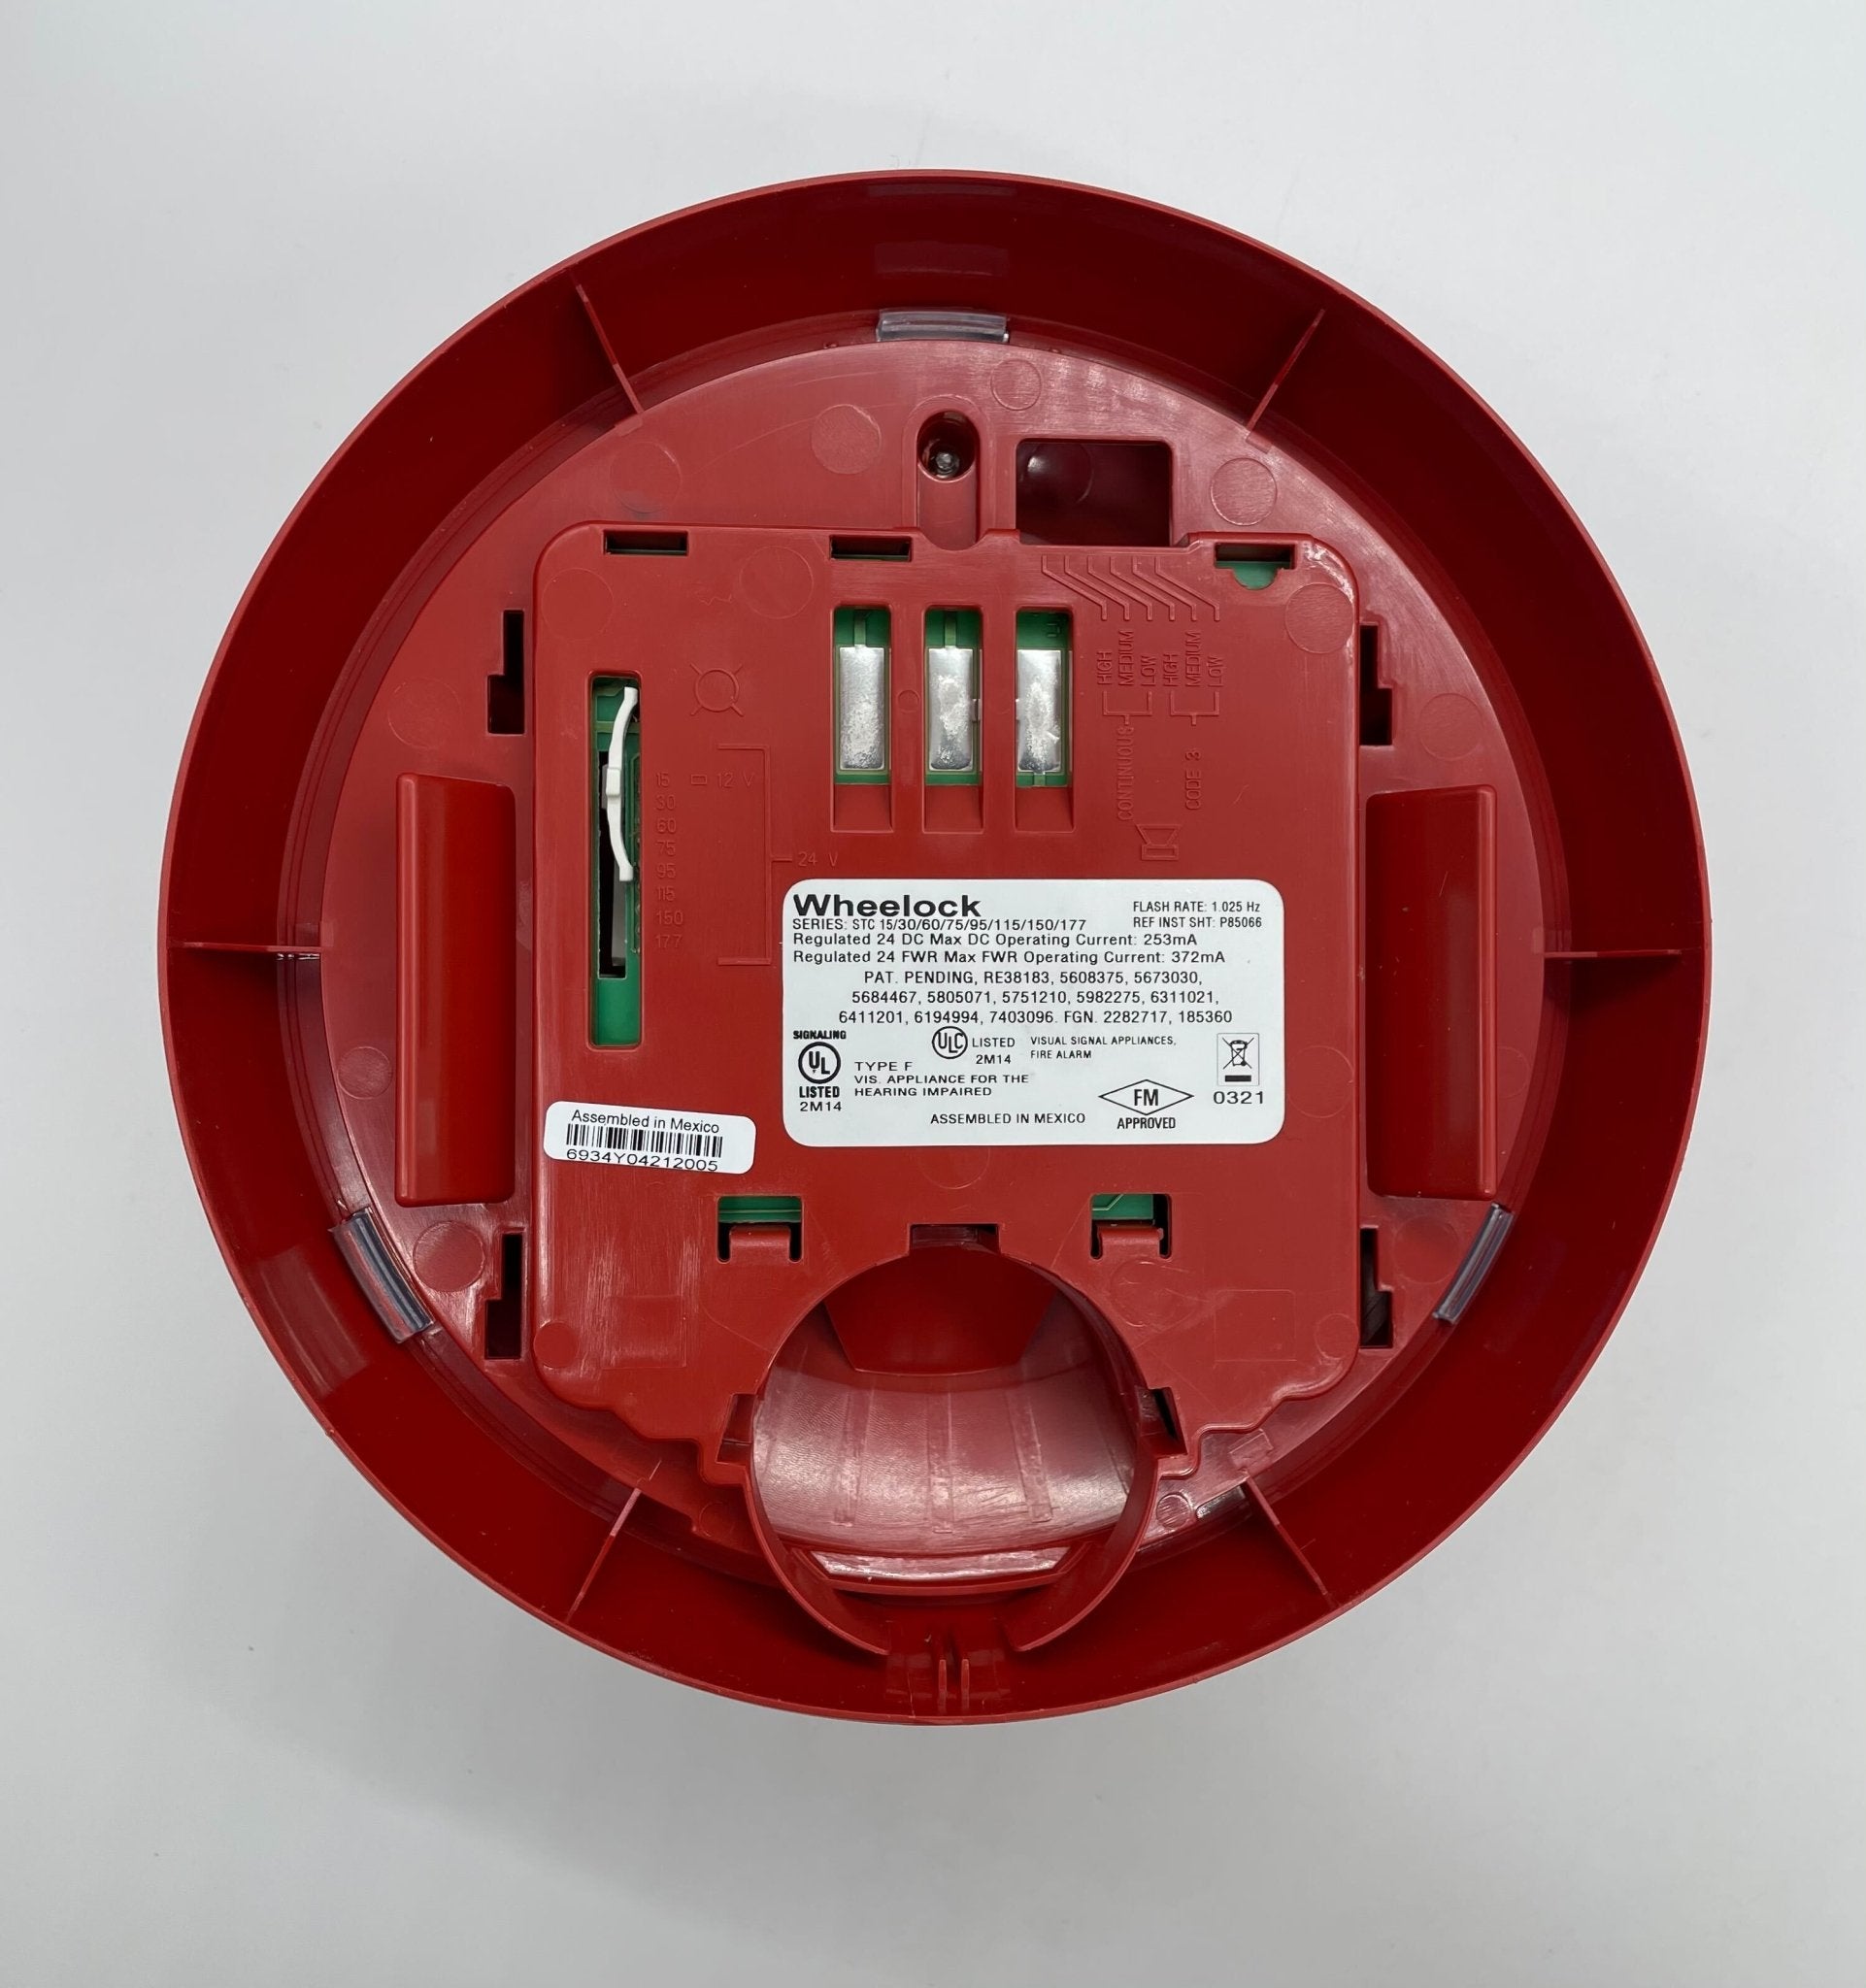 Wheelock STRC Exceder Strobe - The Fire Alarm Supplier